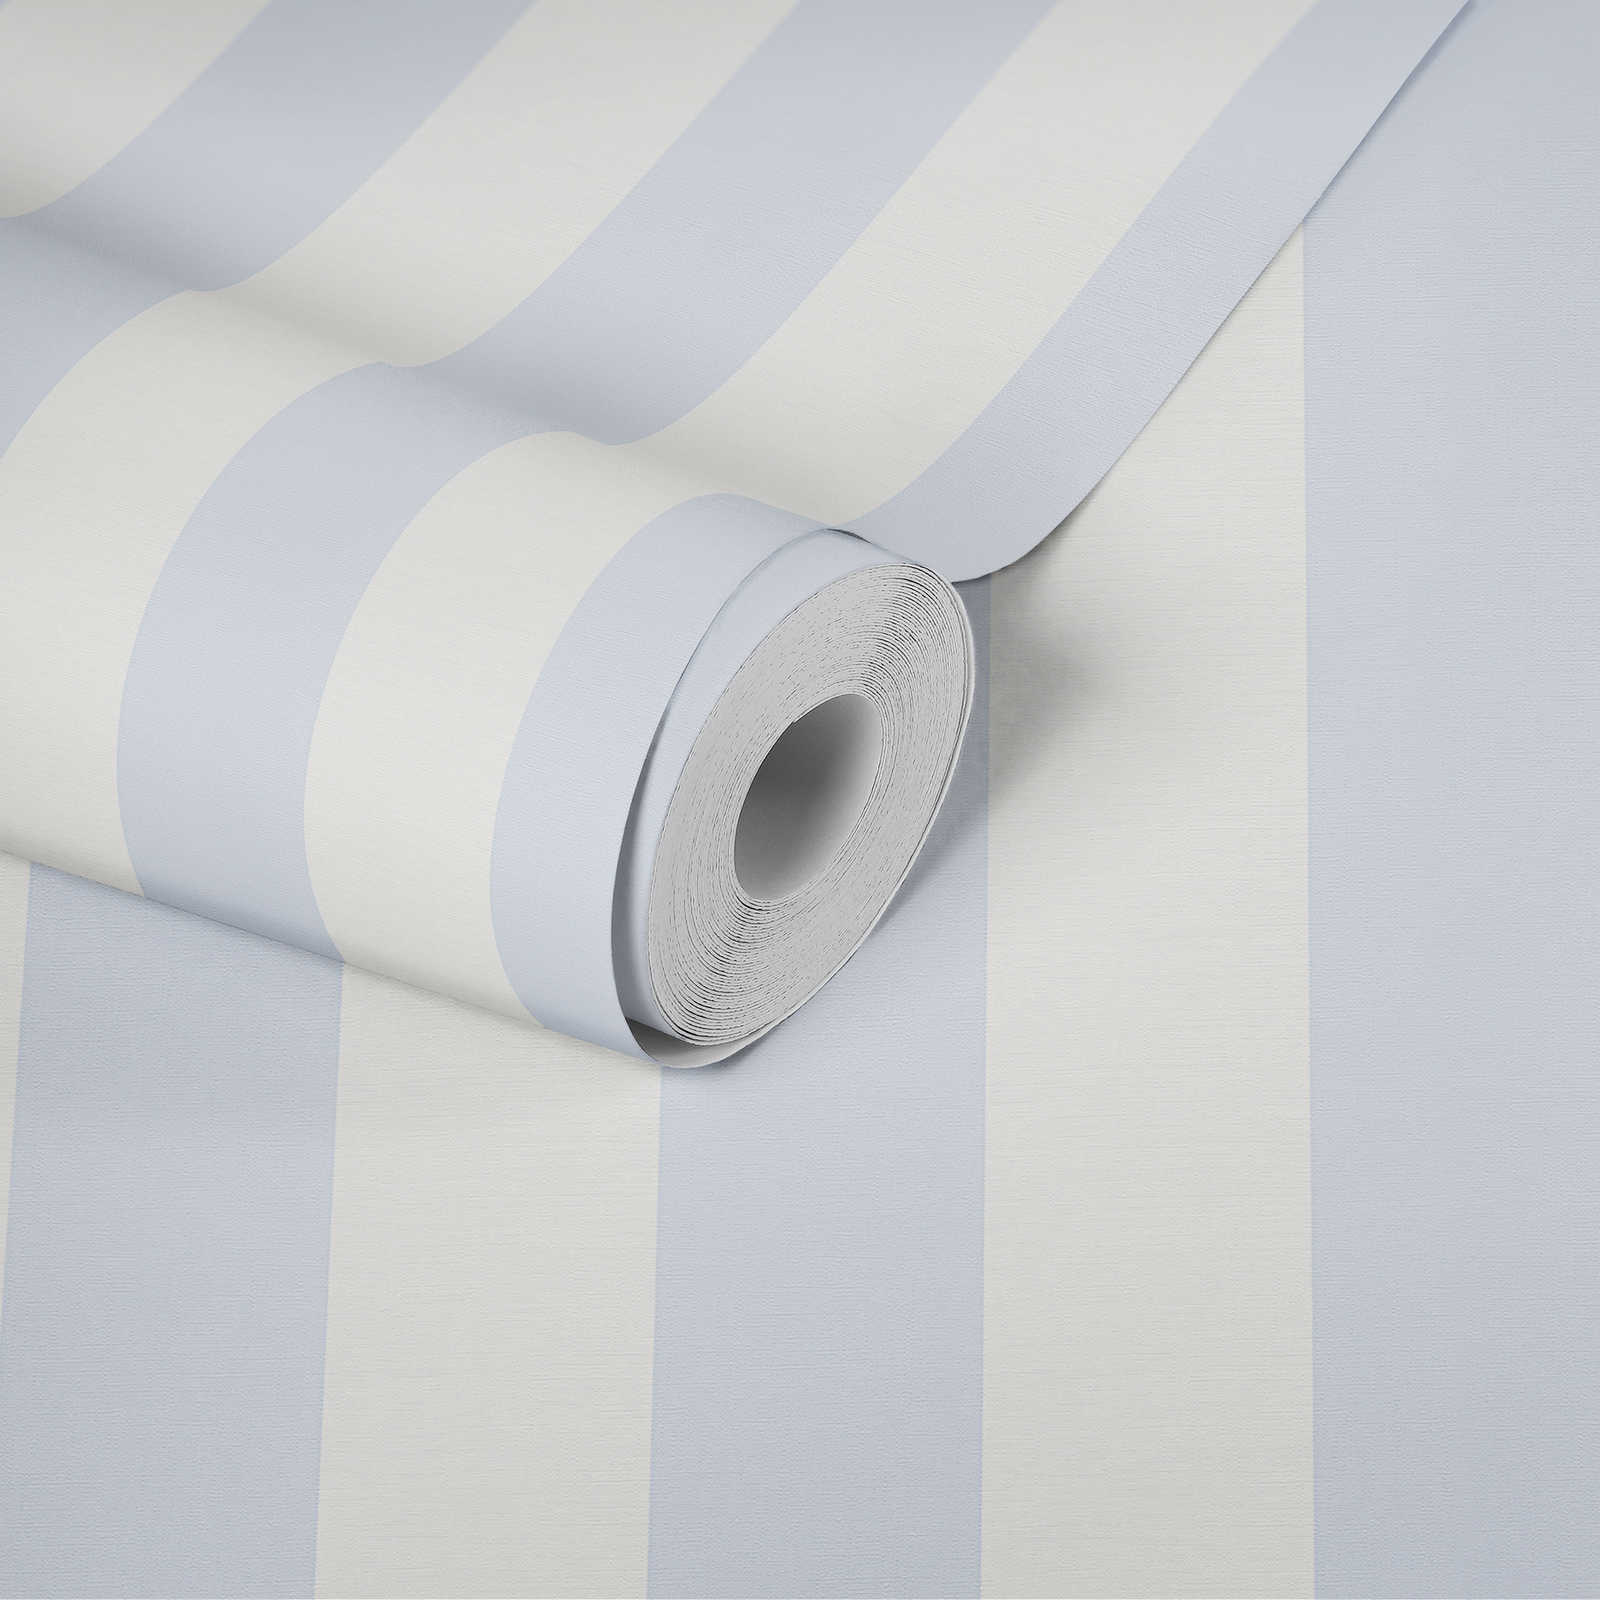             Carta da parati a righe a blocchi con aspetto tessile per un design giovane - blu, bianco
        